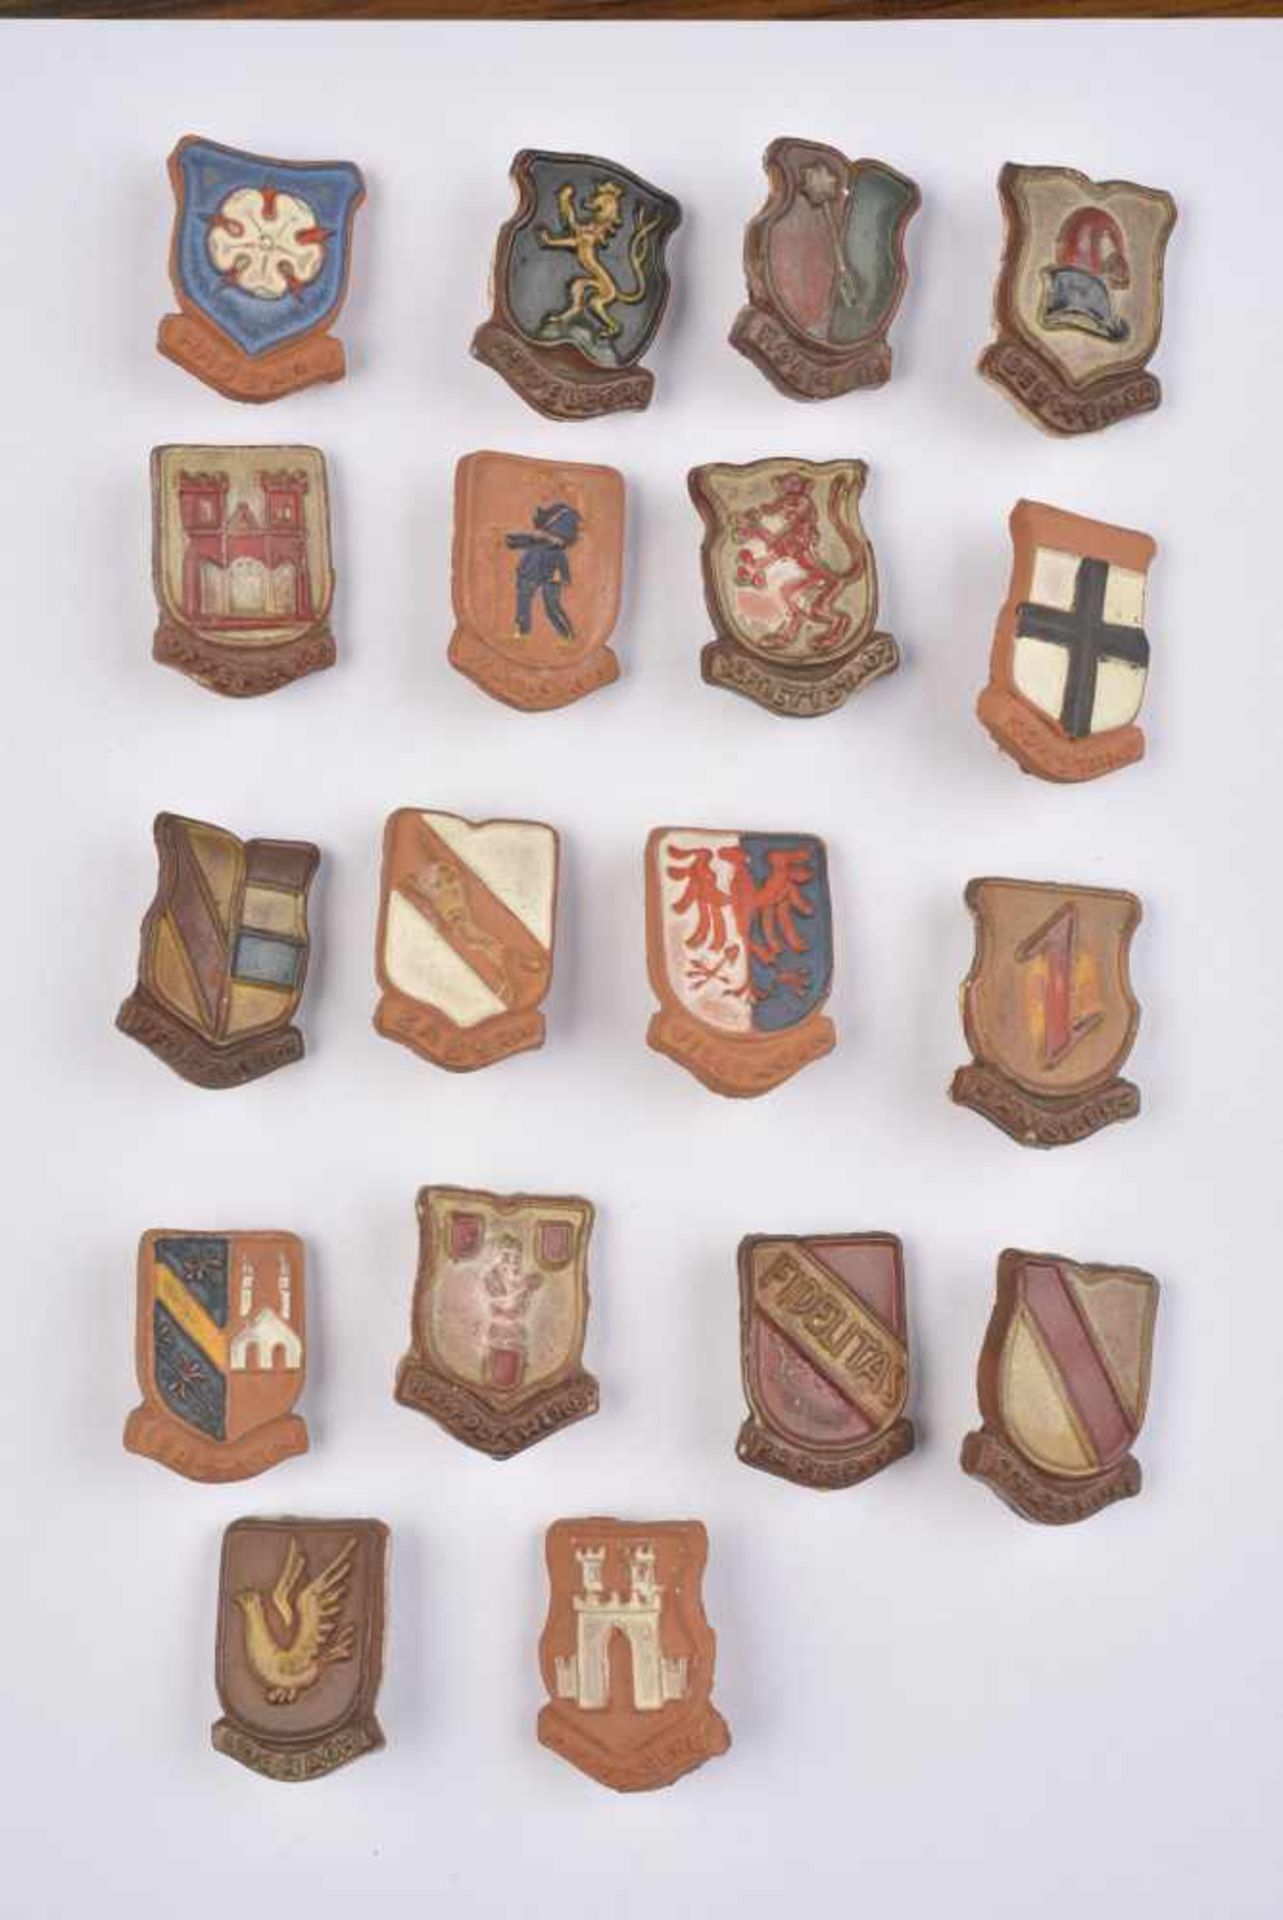 Winterhilfswerk du Gau Baden série du 4/5 janvier 1941 Série en céramique représentant les armoiries